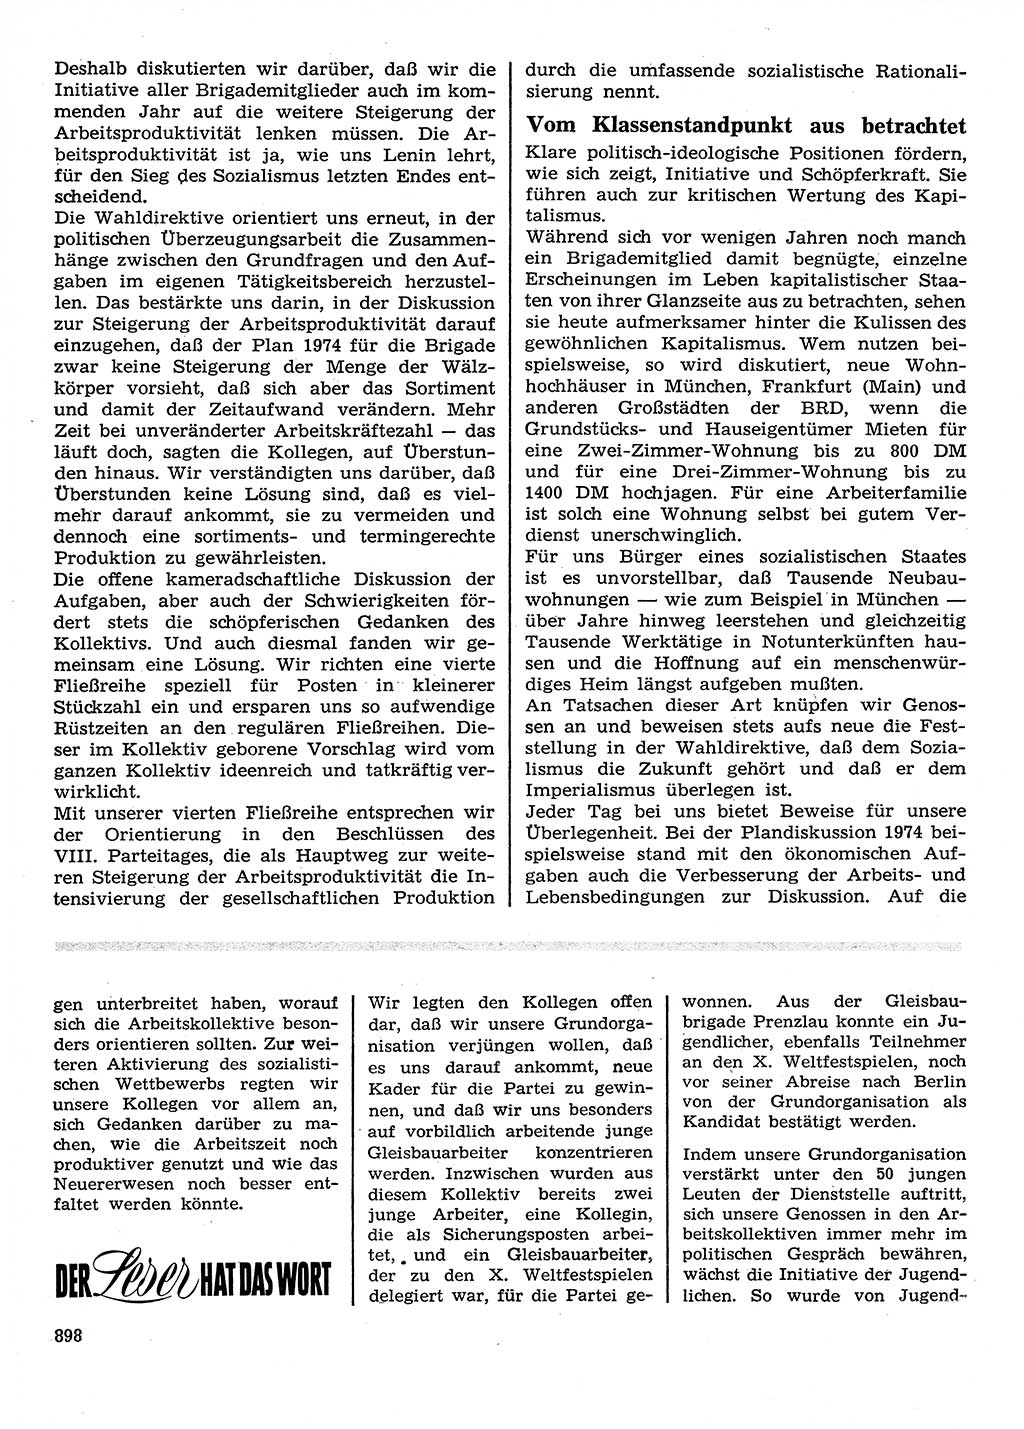 Neuer Weg (NW), Organ des Zentralkomitees (ZK) der SED (Sozialistische Einheitspartei Deutschlands) für Fragen des Parteilebens, 28. Jahrgang [Deutsche Demokratische Republik (DDR)] 1973, Seite 898 (NW ZK SED DDR 1973, S. 898)